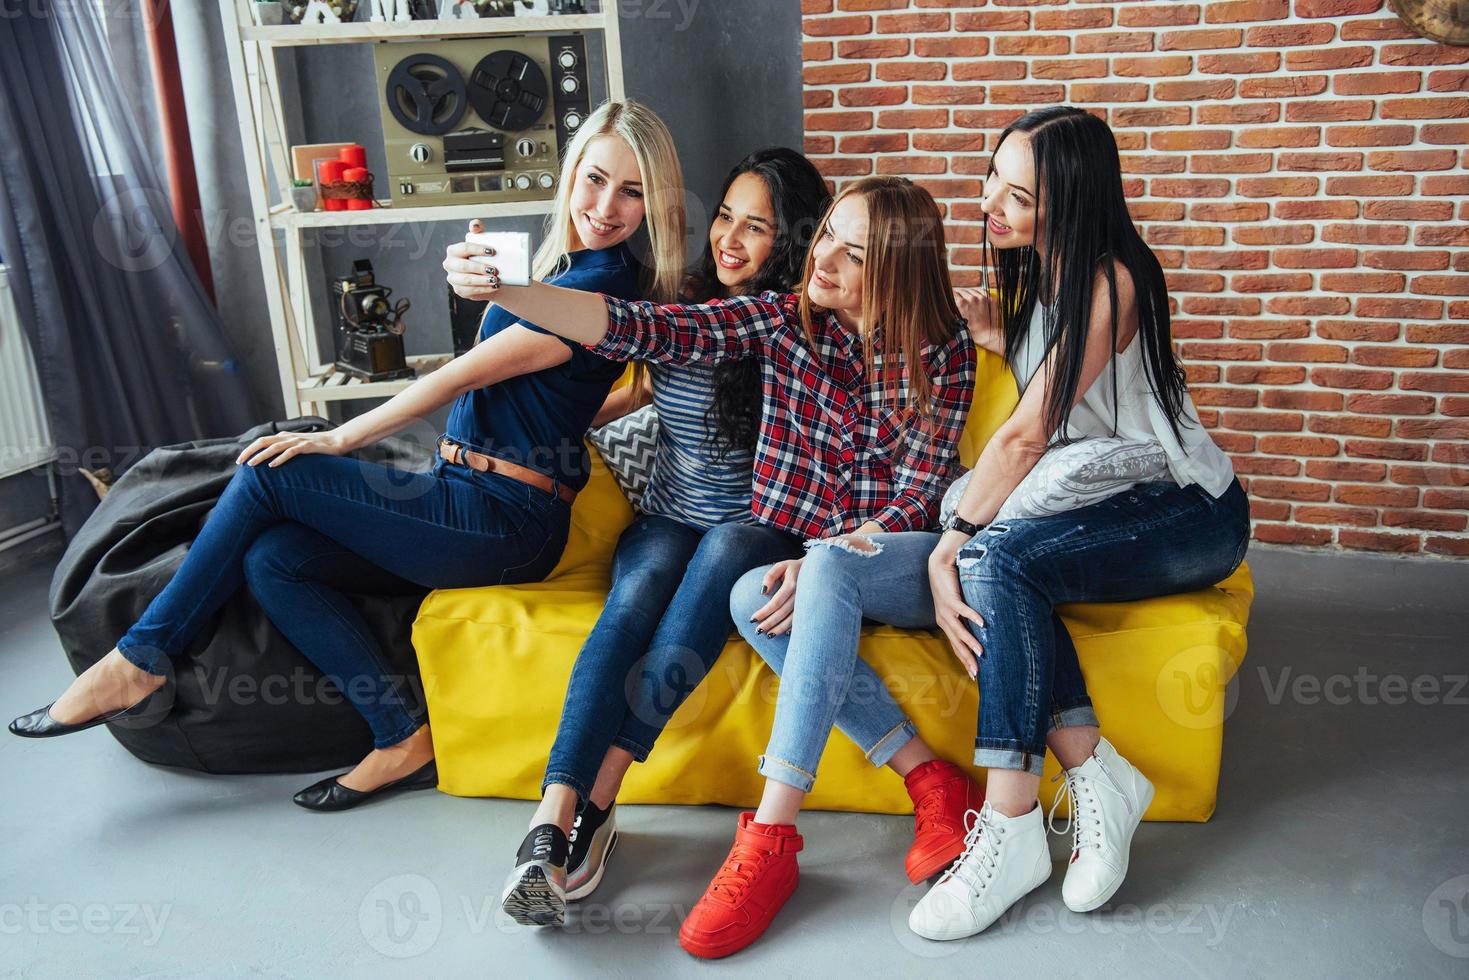 fyra vackra unga kvinnor gör selfie på ett kafé, bästa vänner tjejer tillsammans ha kul, poserar känslomässiga livsstil människor koncept foto